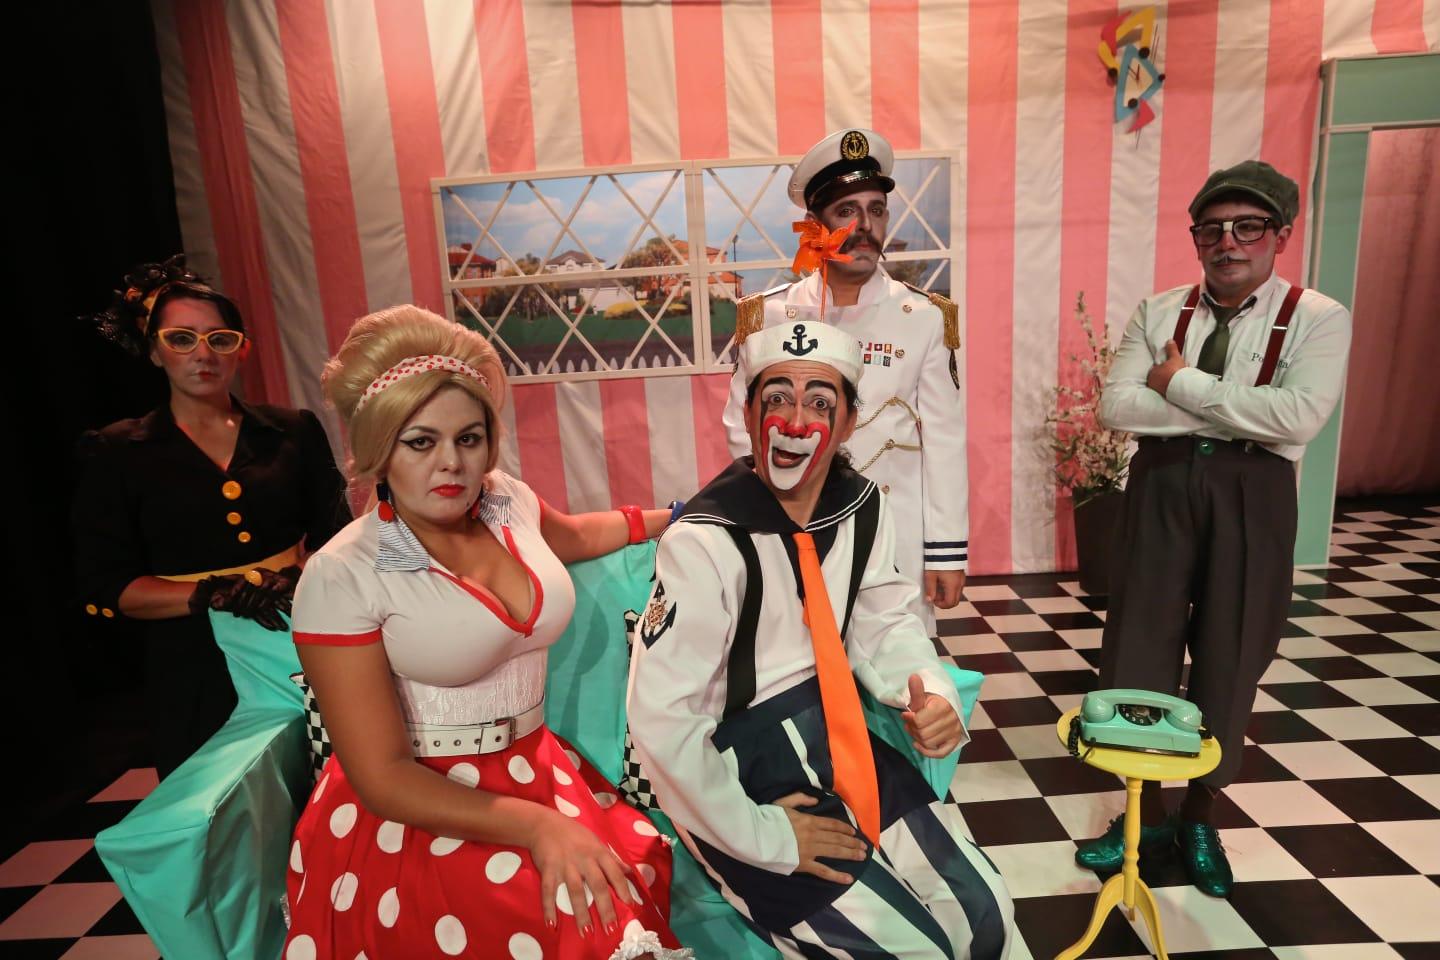 Circo de Teatro Tubinho Exibe Documentário Revelador sobre sua História no Centro de Memória do Circo